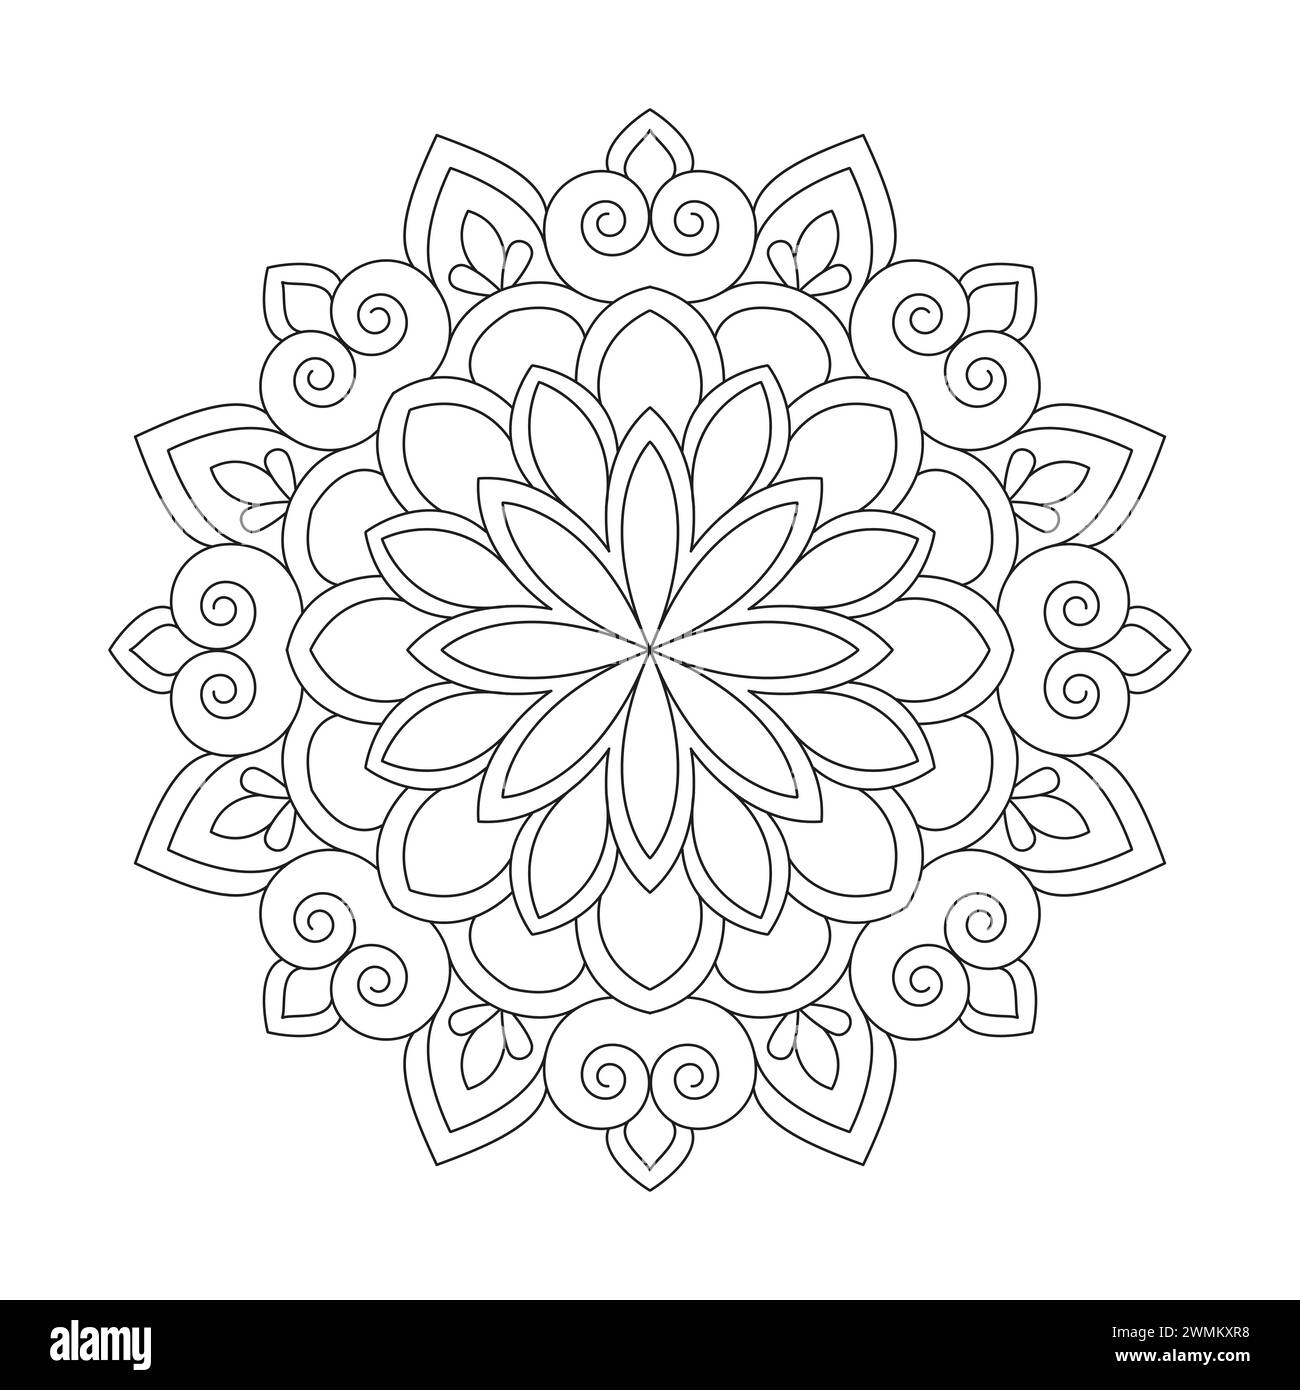 Luminous Dekorative Mandala Malbuchseite für kdp Buchinnenraum. Friedliche Blütenblätter, Fähigkeit zum Entspannen, Gehirnerlebnisse, harmonischer Hafen, friedlich Stock Vektor